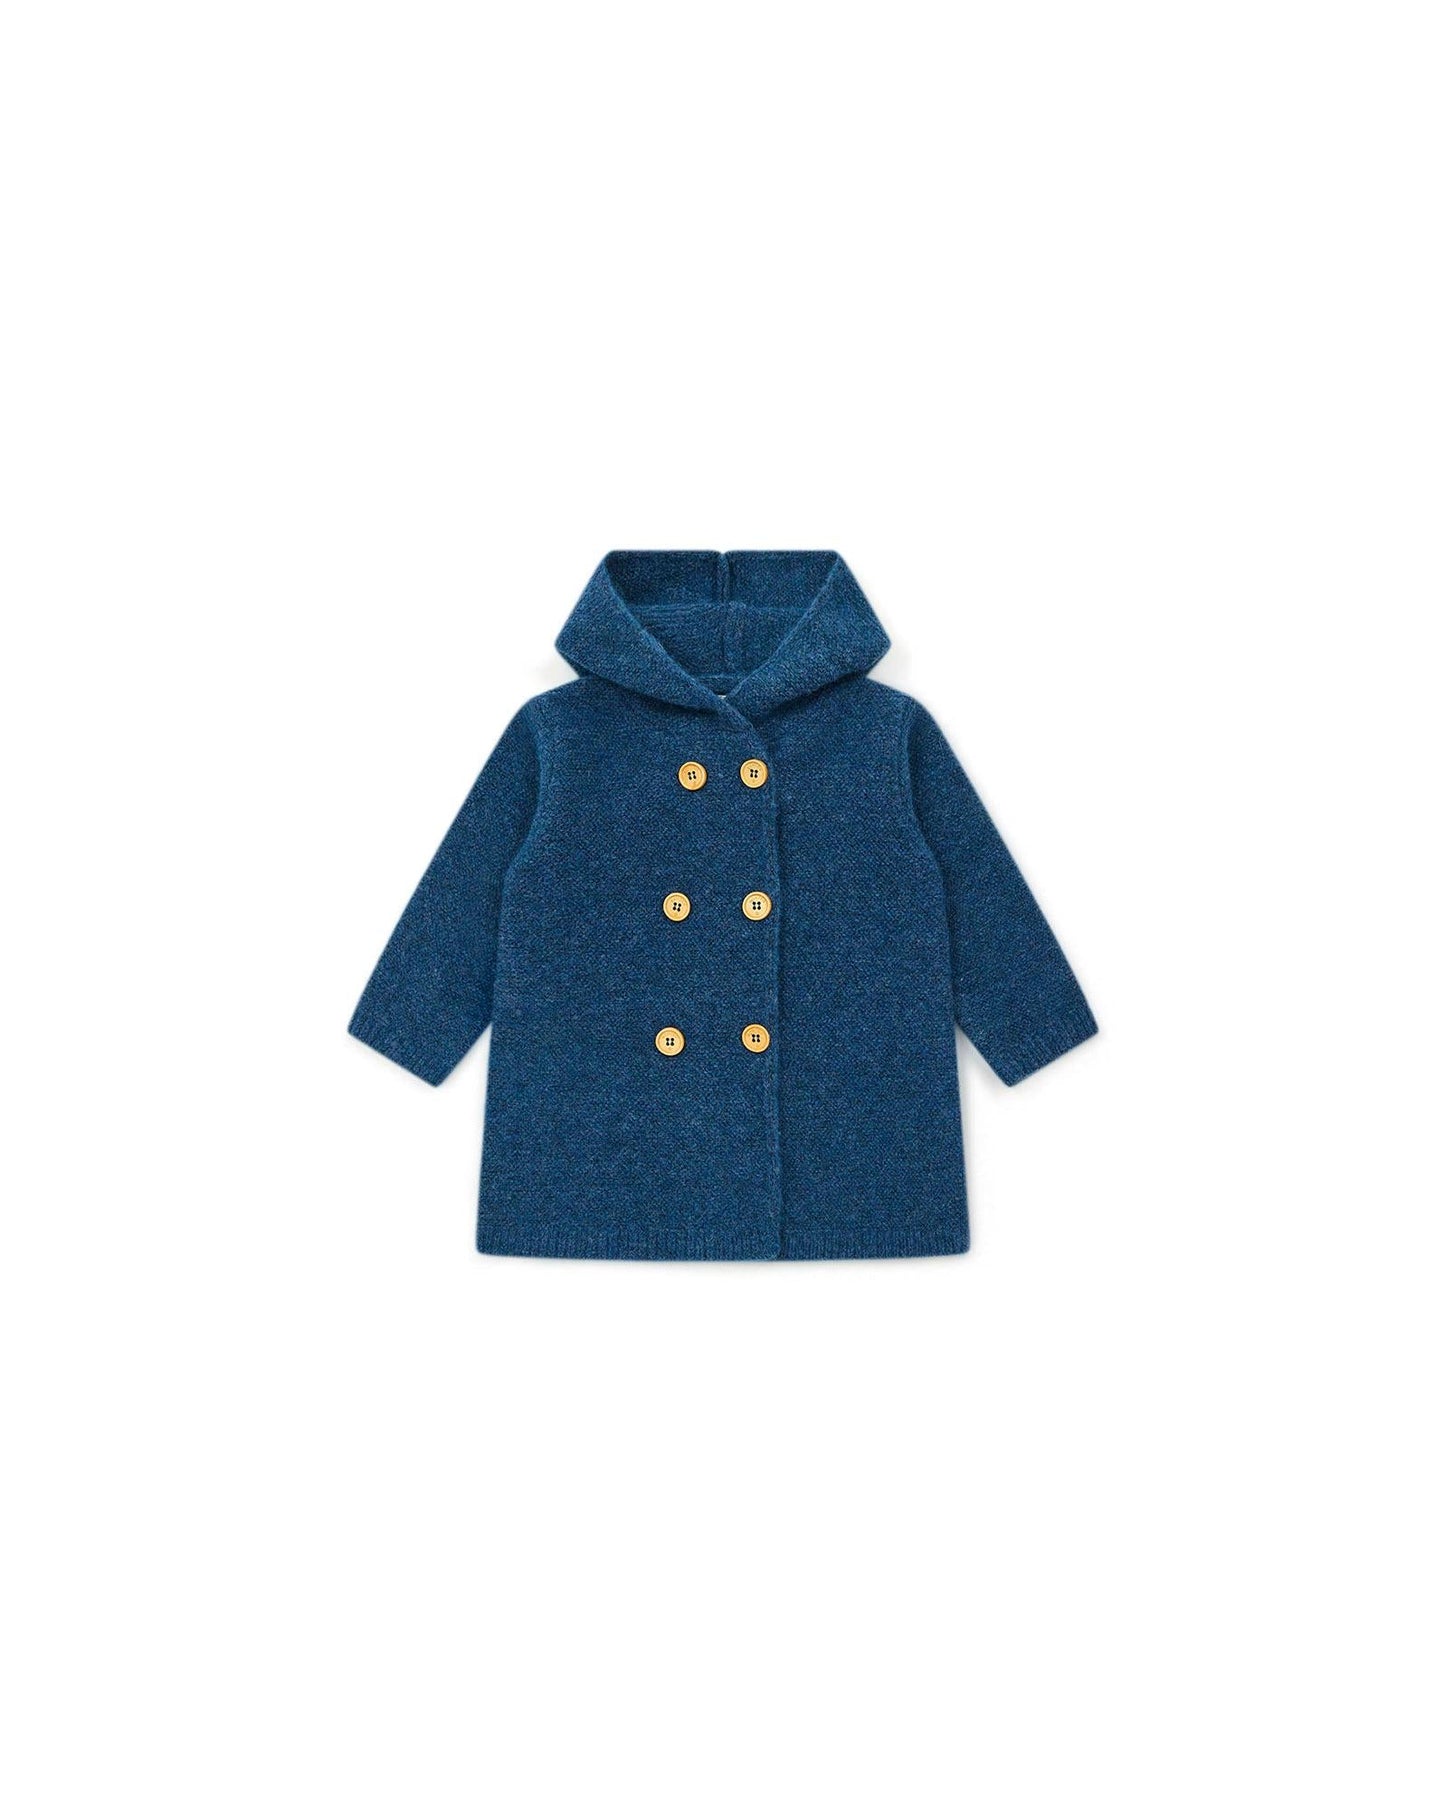 Manteau Miro bleu Bébé en tricot point mousse